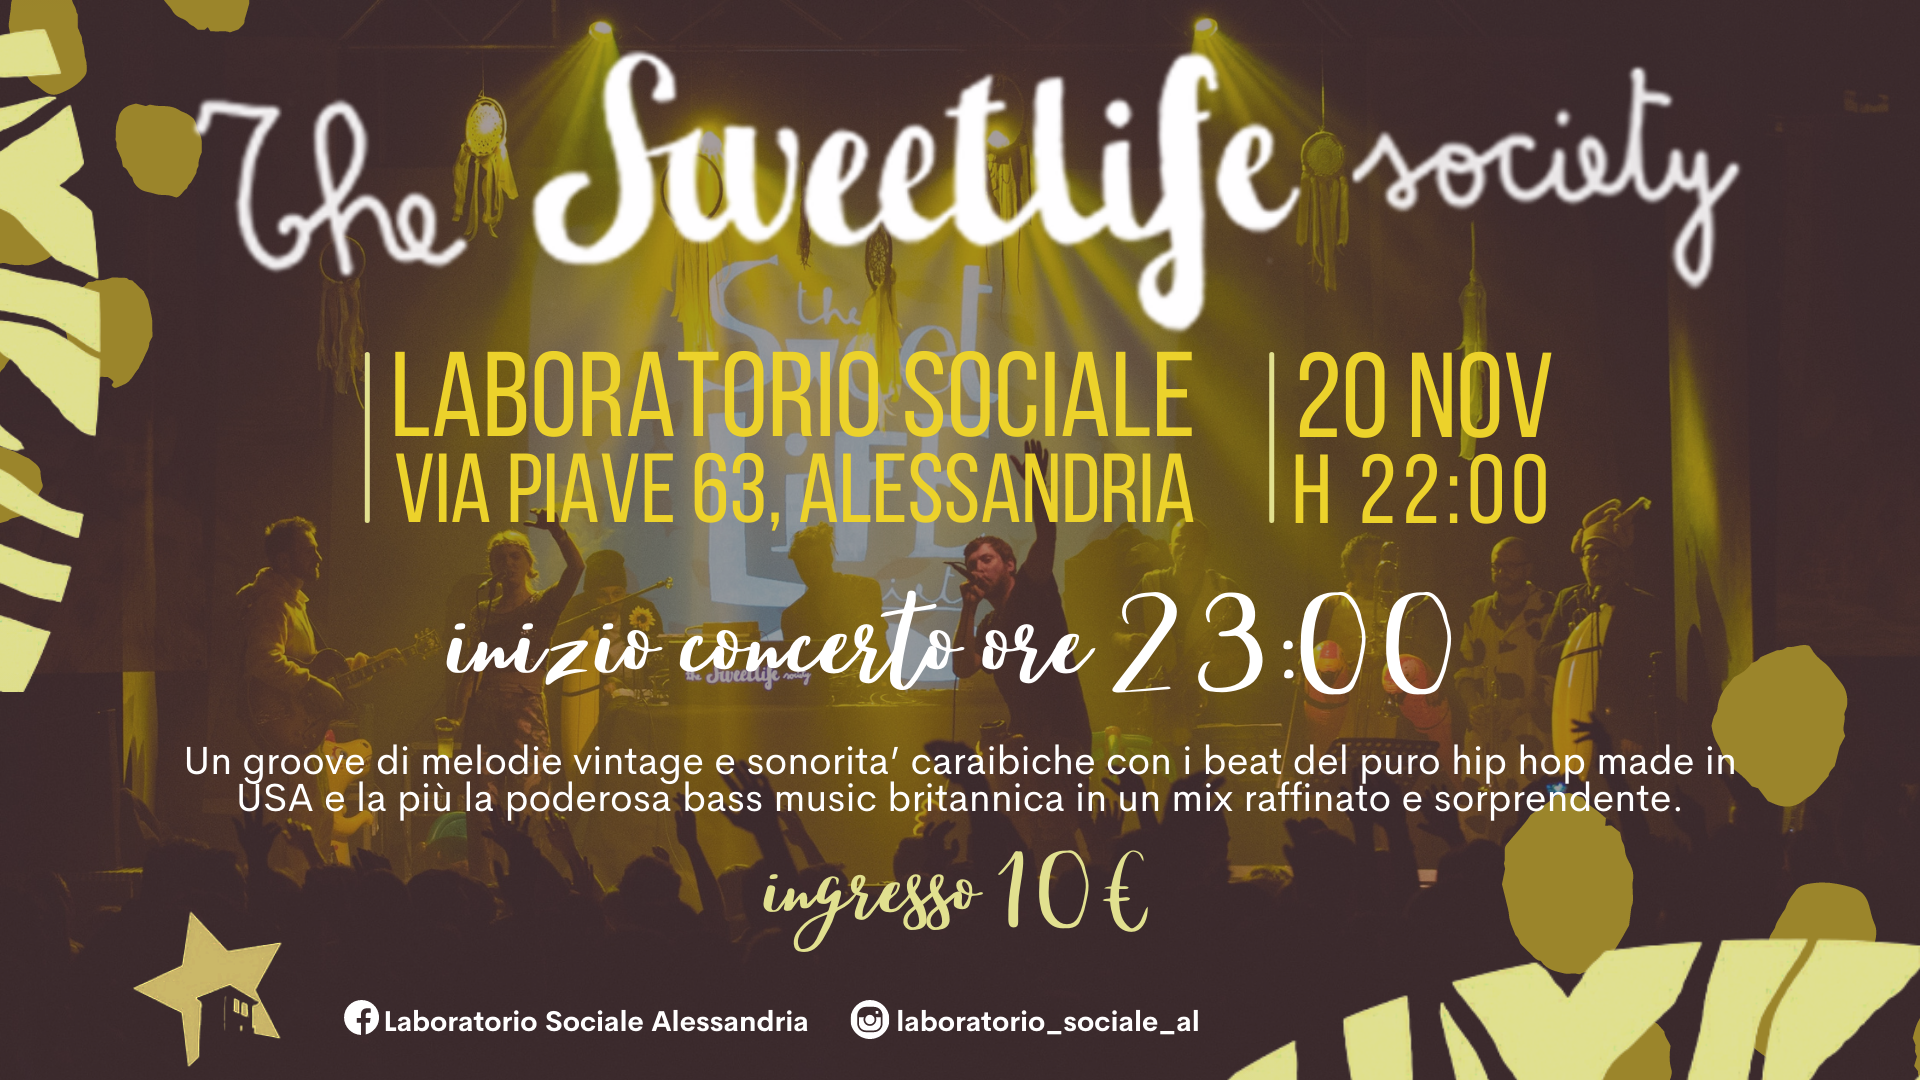 Sabato 20 novembre, The Sweet Life Society live!